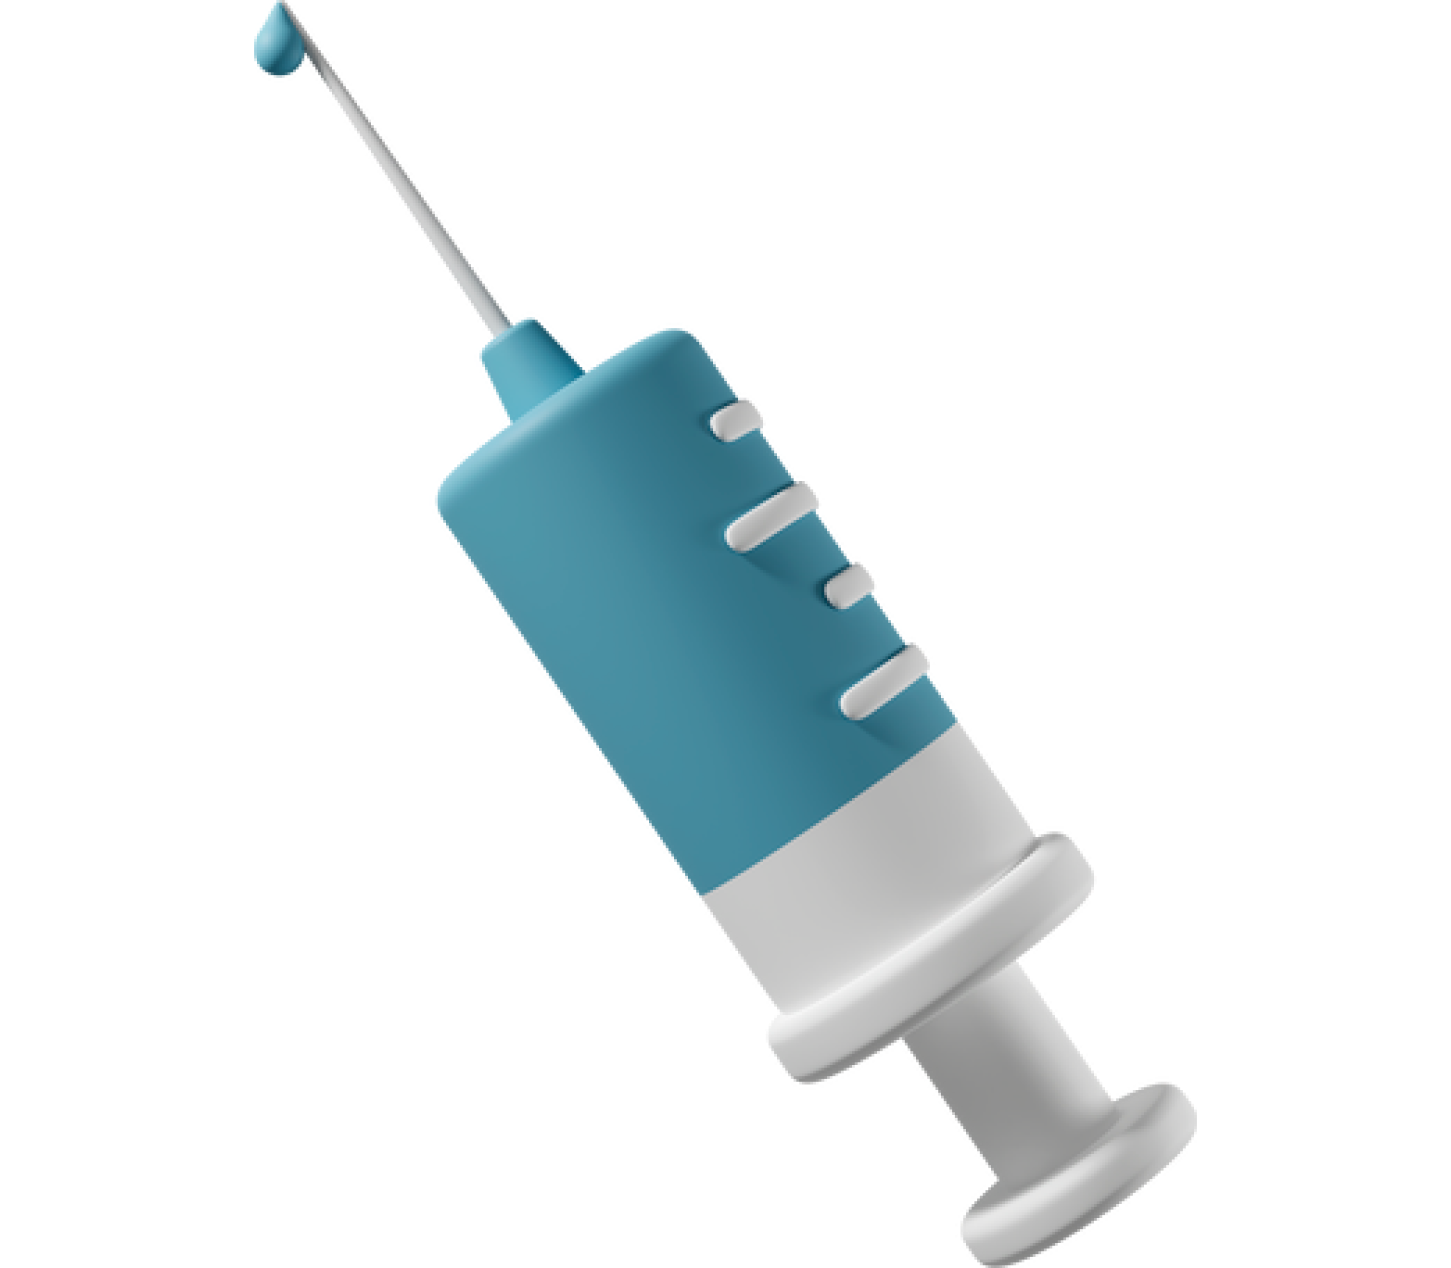 Blue syringe with needle